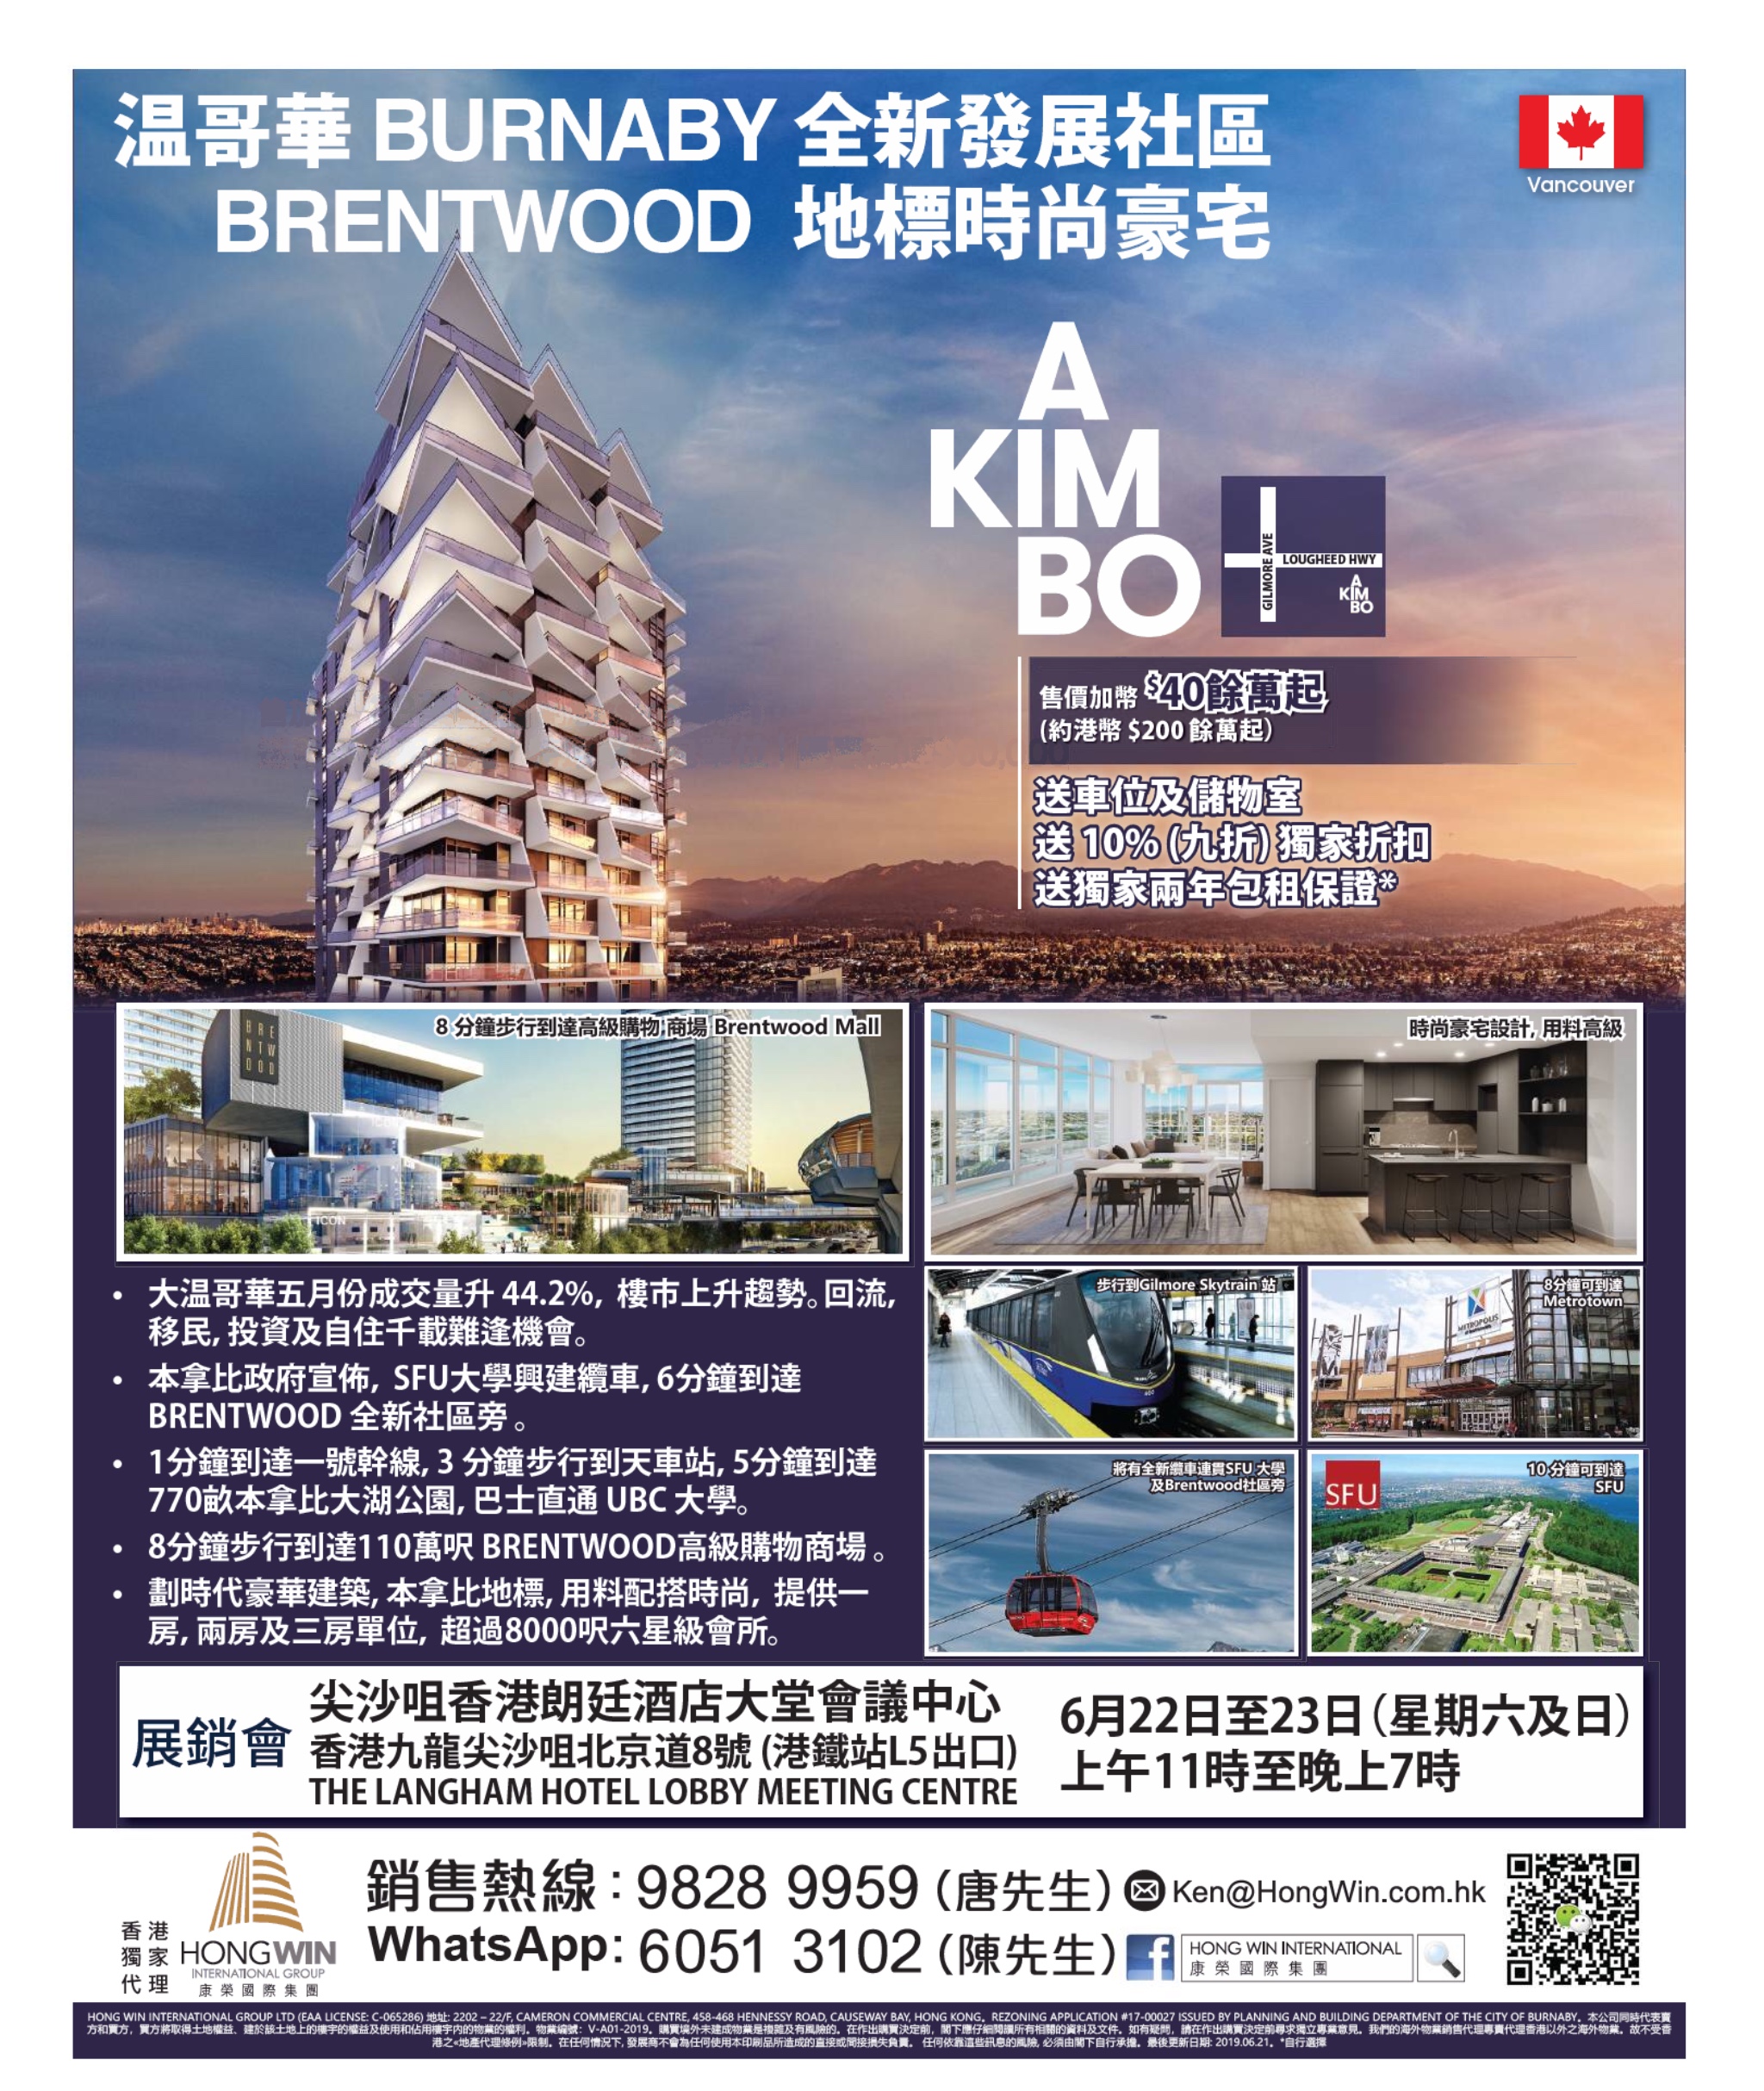 香港地产代理网 HK Estate Agent 最新住宅、商舖、村屋、车位、工业大厦资讯: 溫哥華